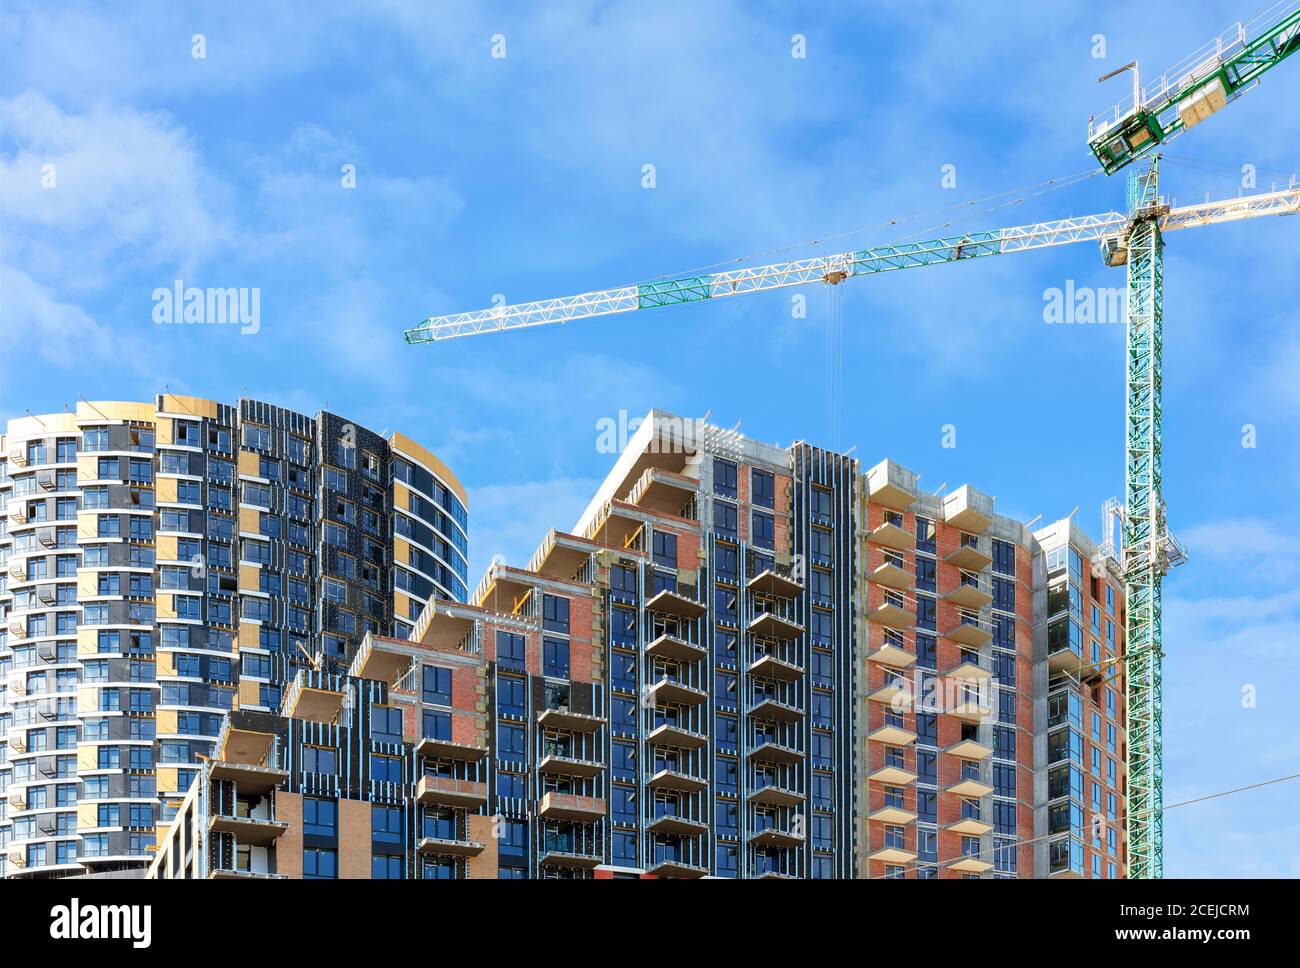 Sitio de construcción de un complejo residencial de varios pisos con pisos en cascada contra un cielo azul nublado, espacio de copia. Foto de stock